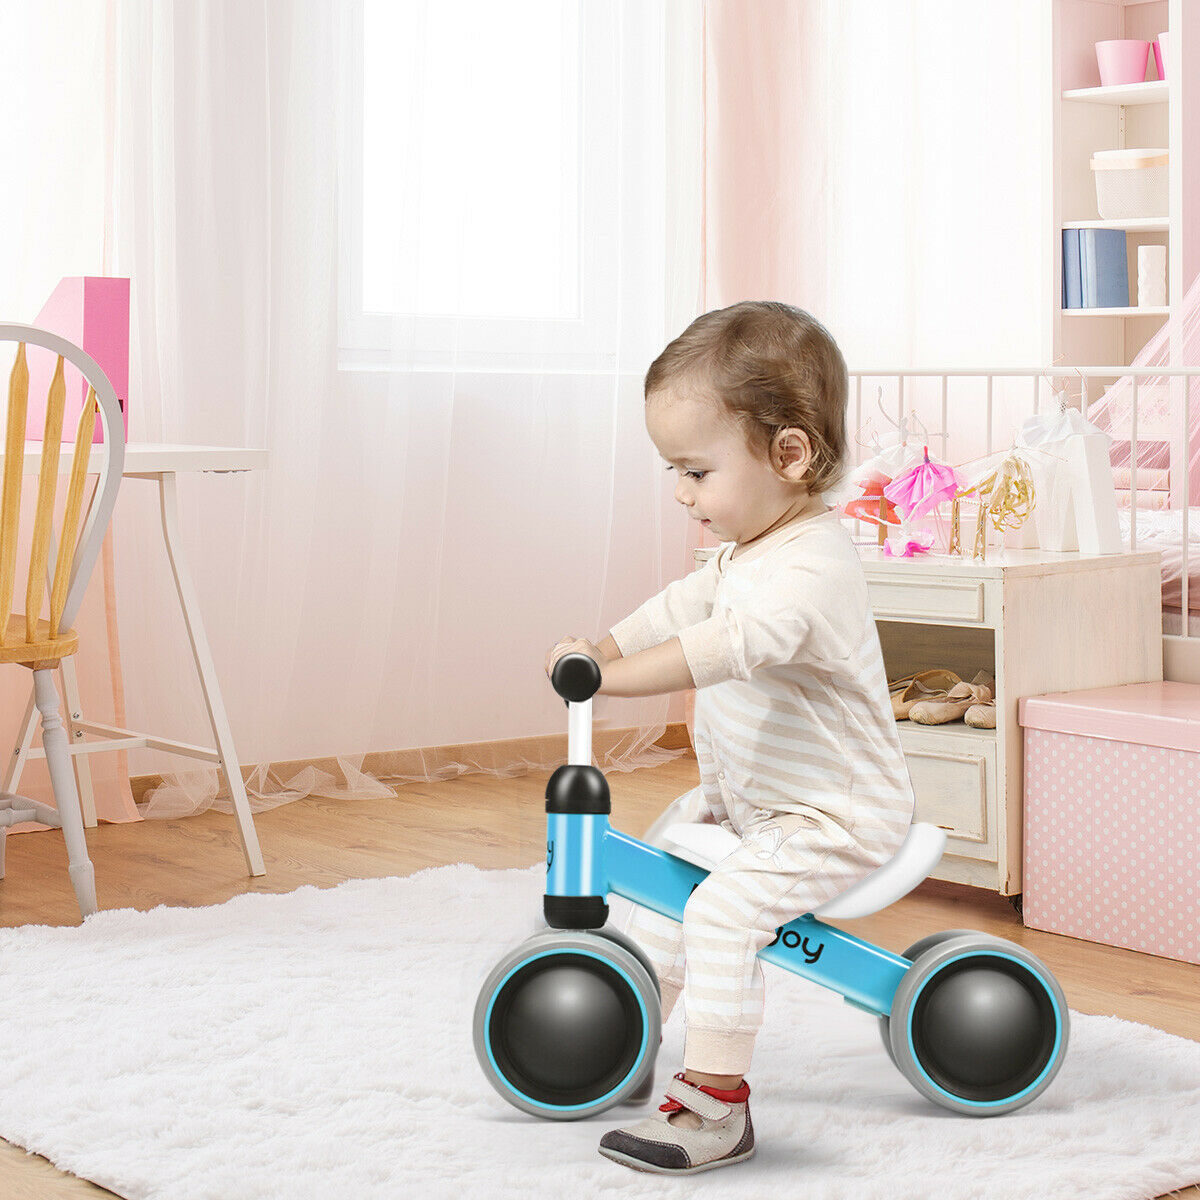 Babyjoy 4 Wheels Baby Balance Bike Children Walker No-Pedal Toddler Toys Rides Blue - image 4 of 10